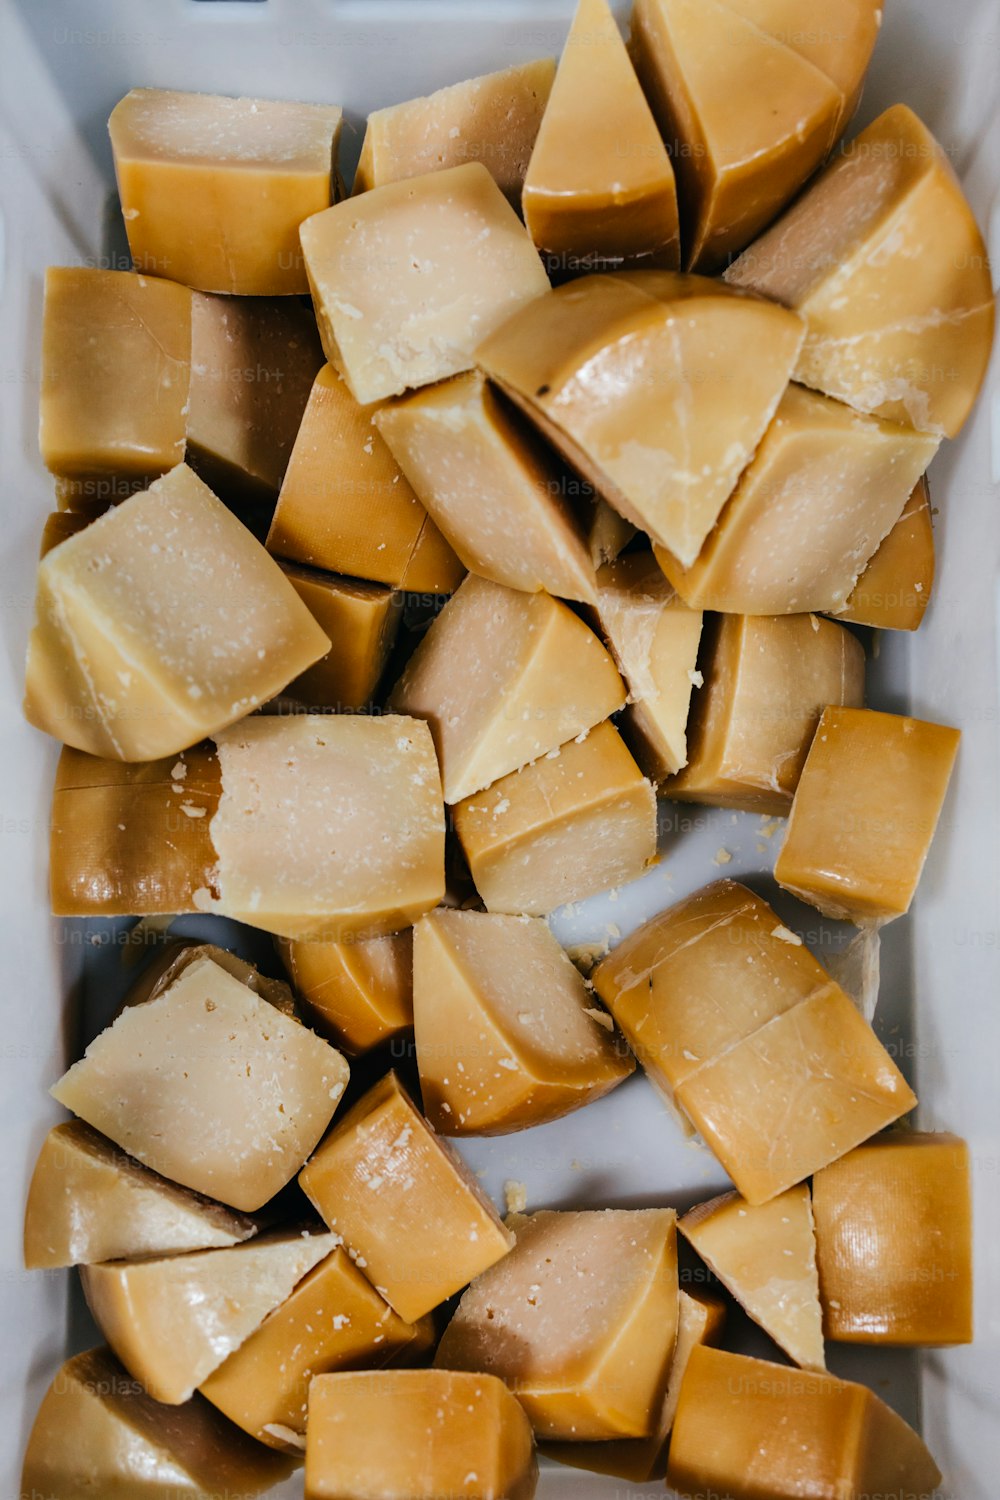 Detalles de la tradicional fábrica de producción de quesos y lácteos. Trozos de delicioso queso en rodajas listos para empacar.